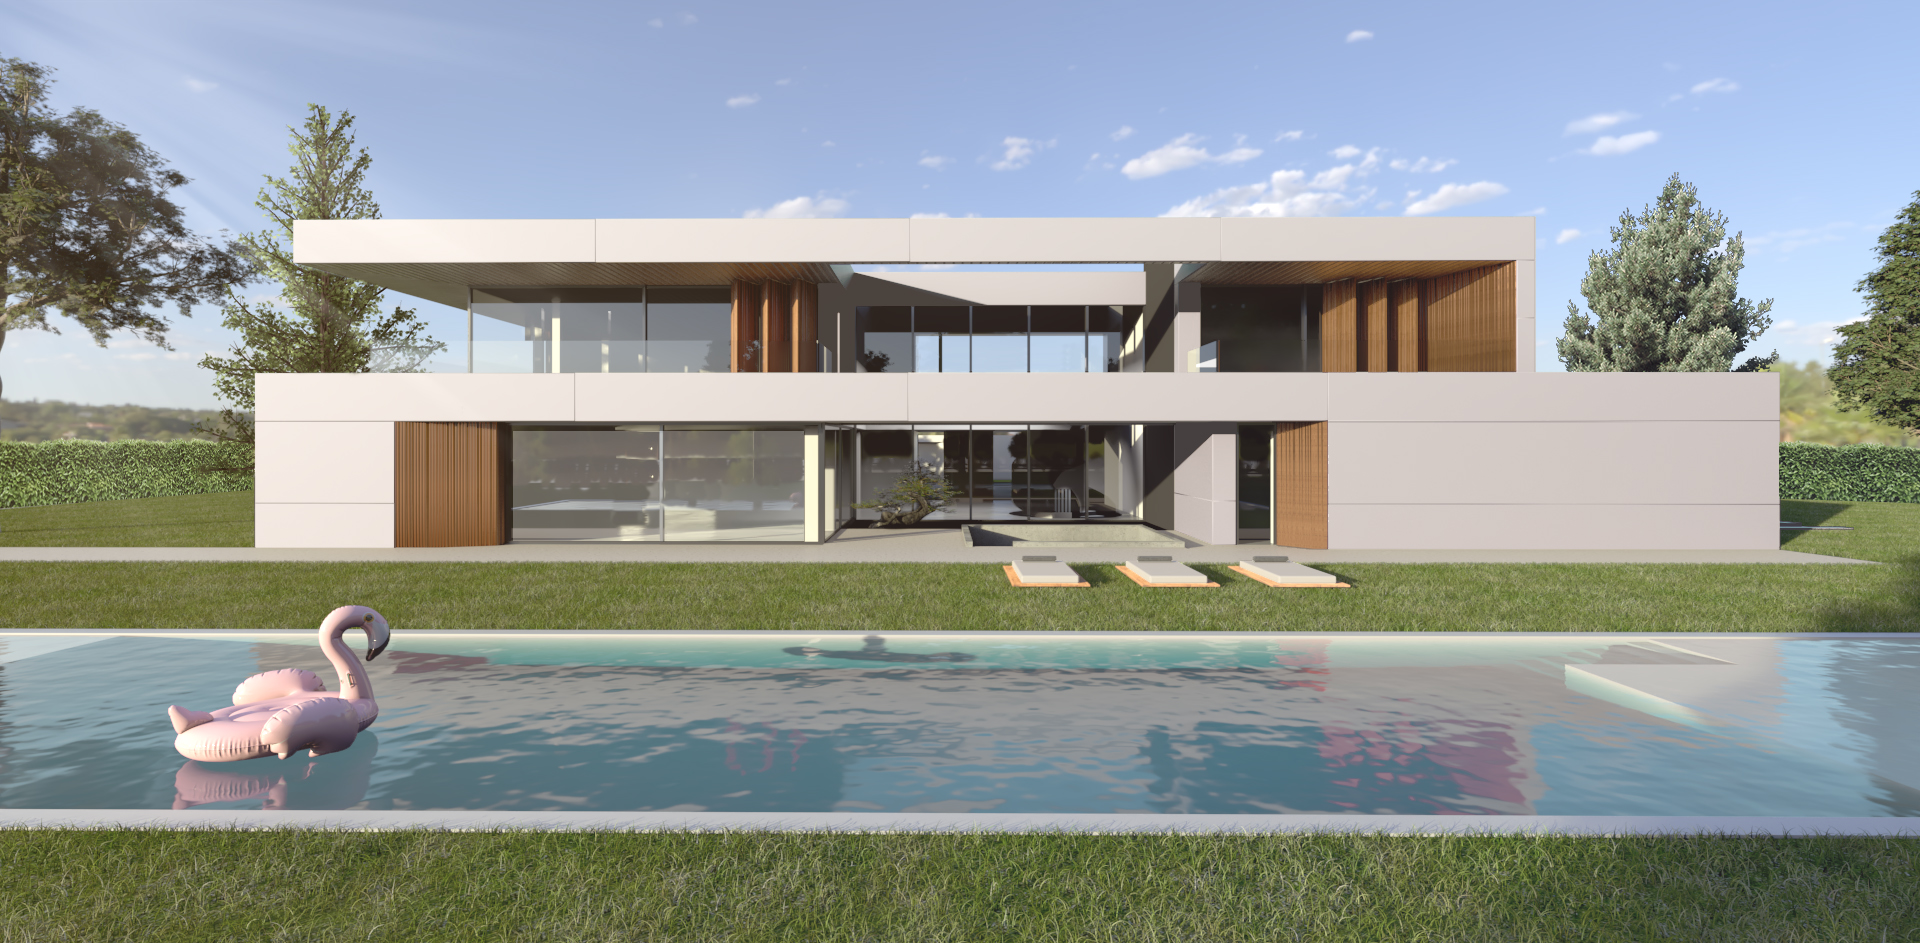 render_visualización_arquitectónica_arquitectura_luxury_pradolargo_pozuelo_madrid_vivienda_de_lujo